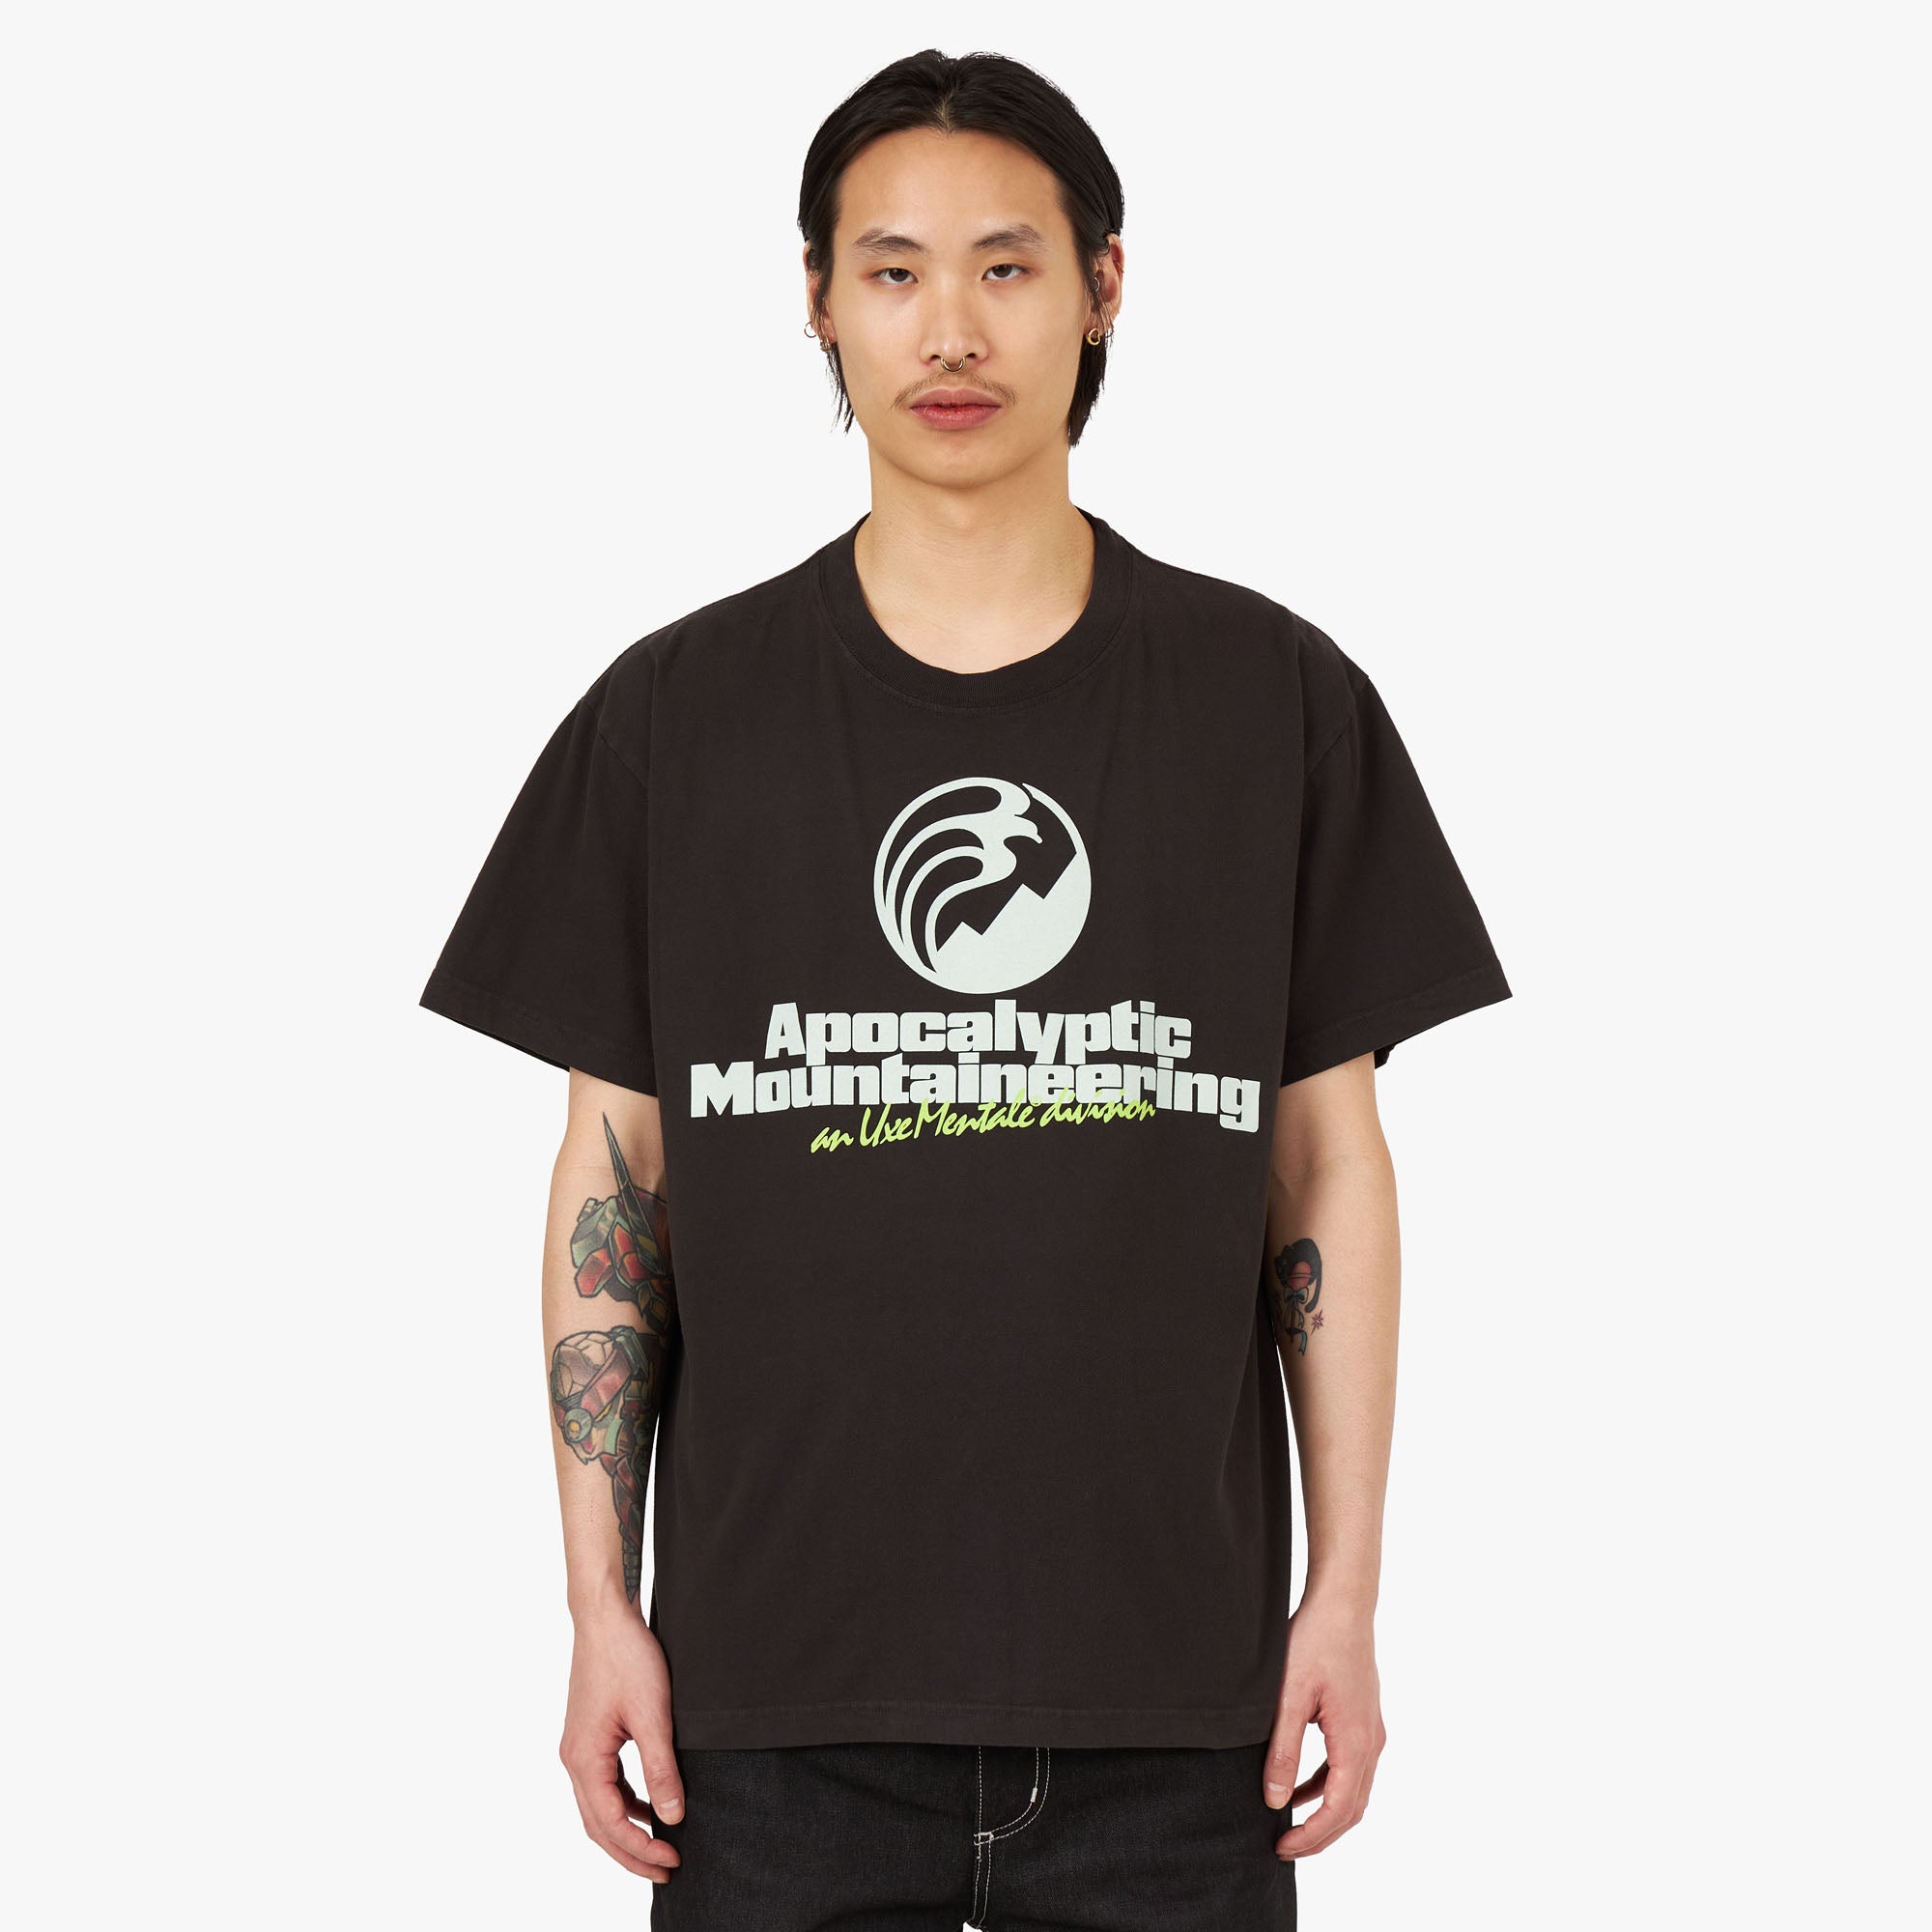 UXE Mentale Apocalyptic Mountaineering T-shirt / Black 1